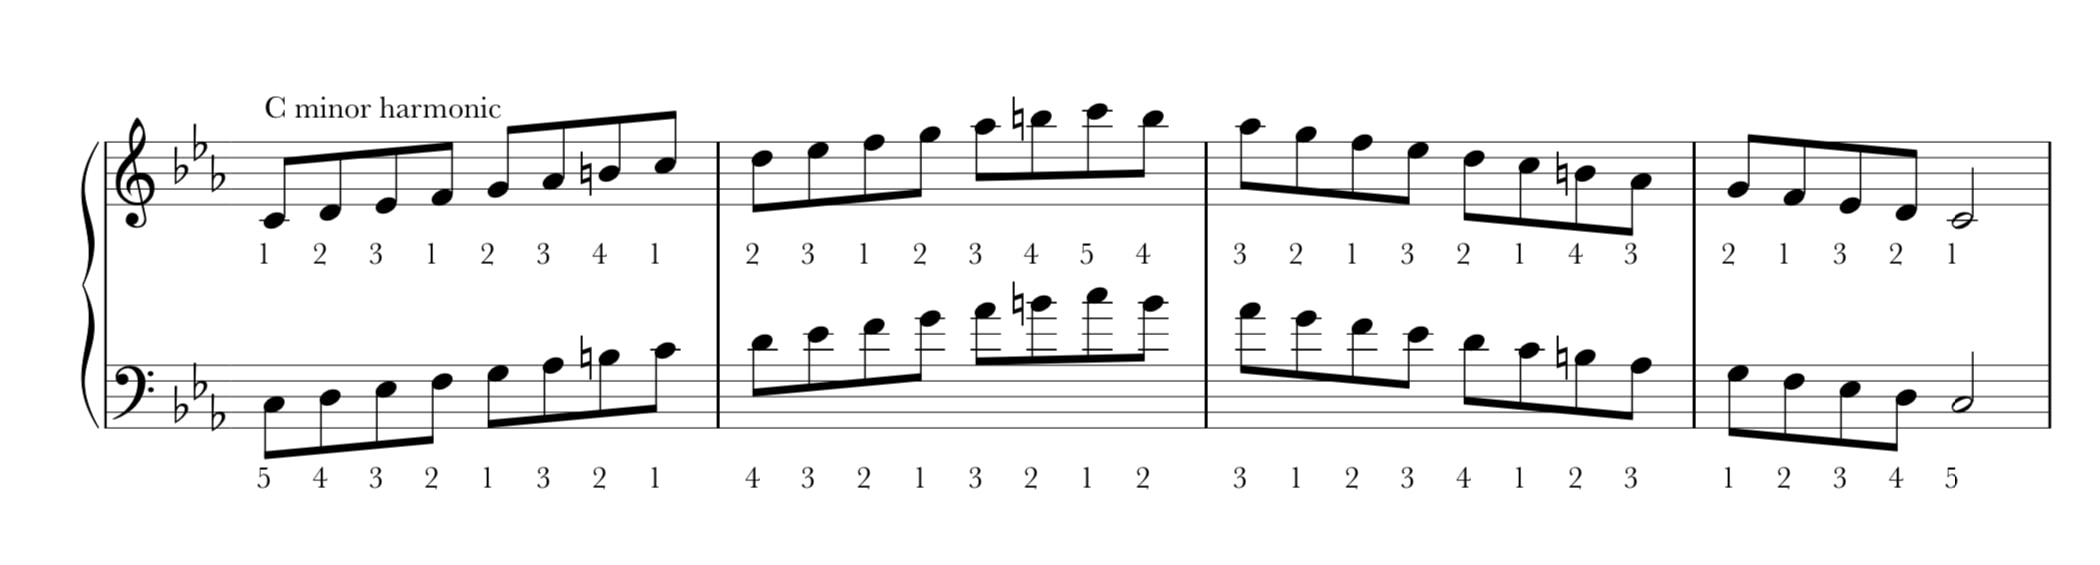 C harmonic minor scale